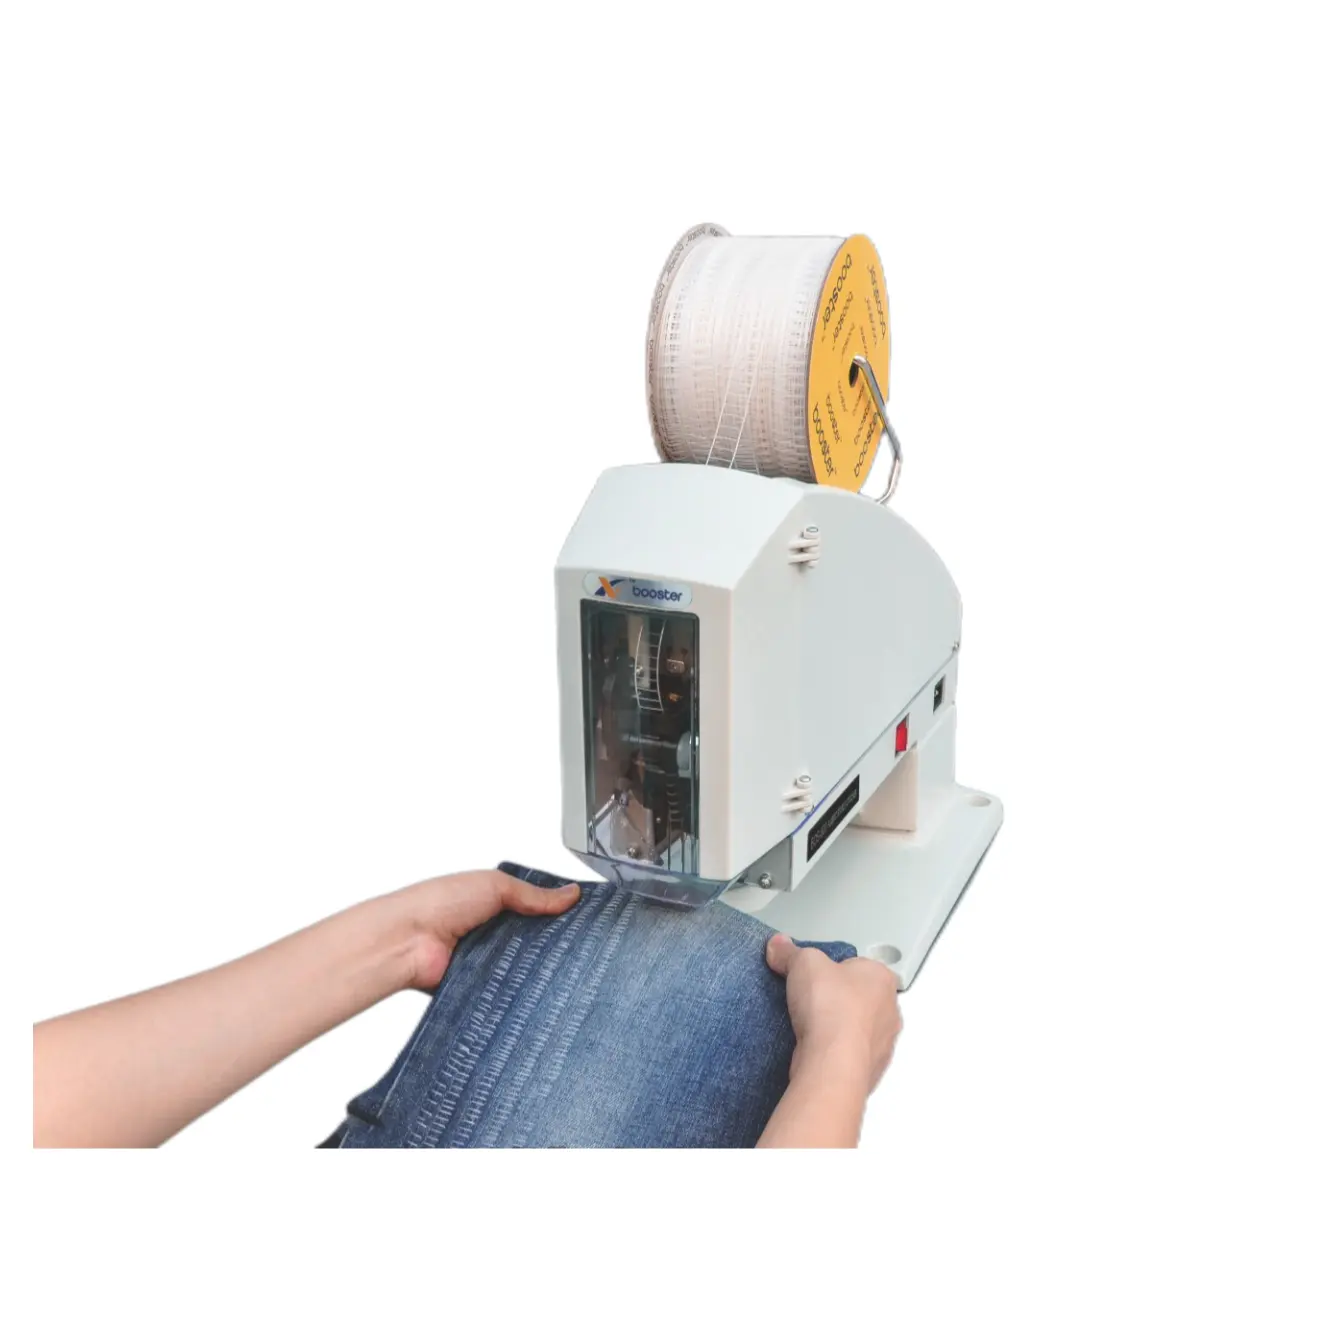 Booster personalizado plástico grampo máquina automática plástico grampo pin máquina para roupas toalhas meias jeans pendurar rótulos